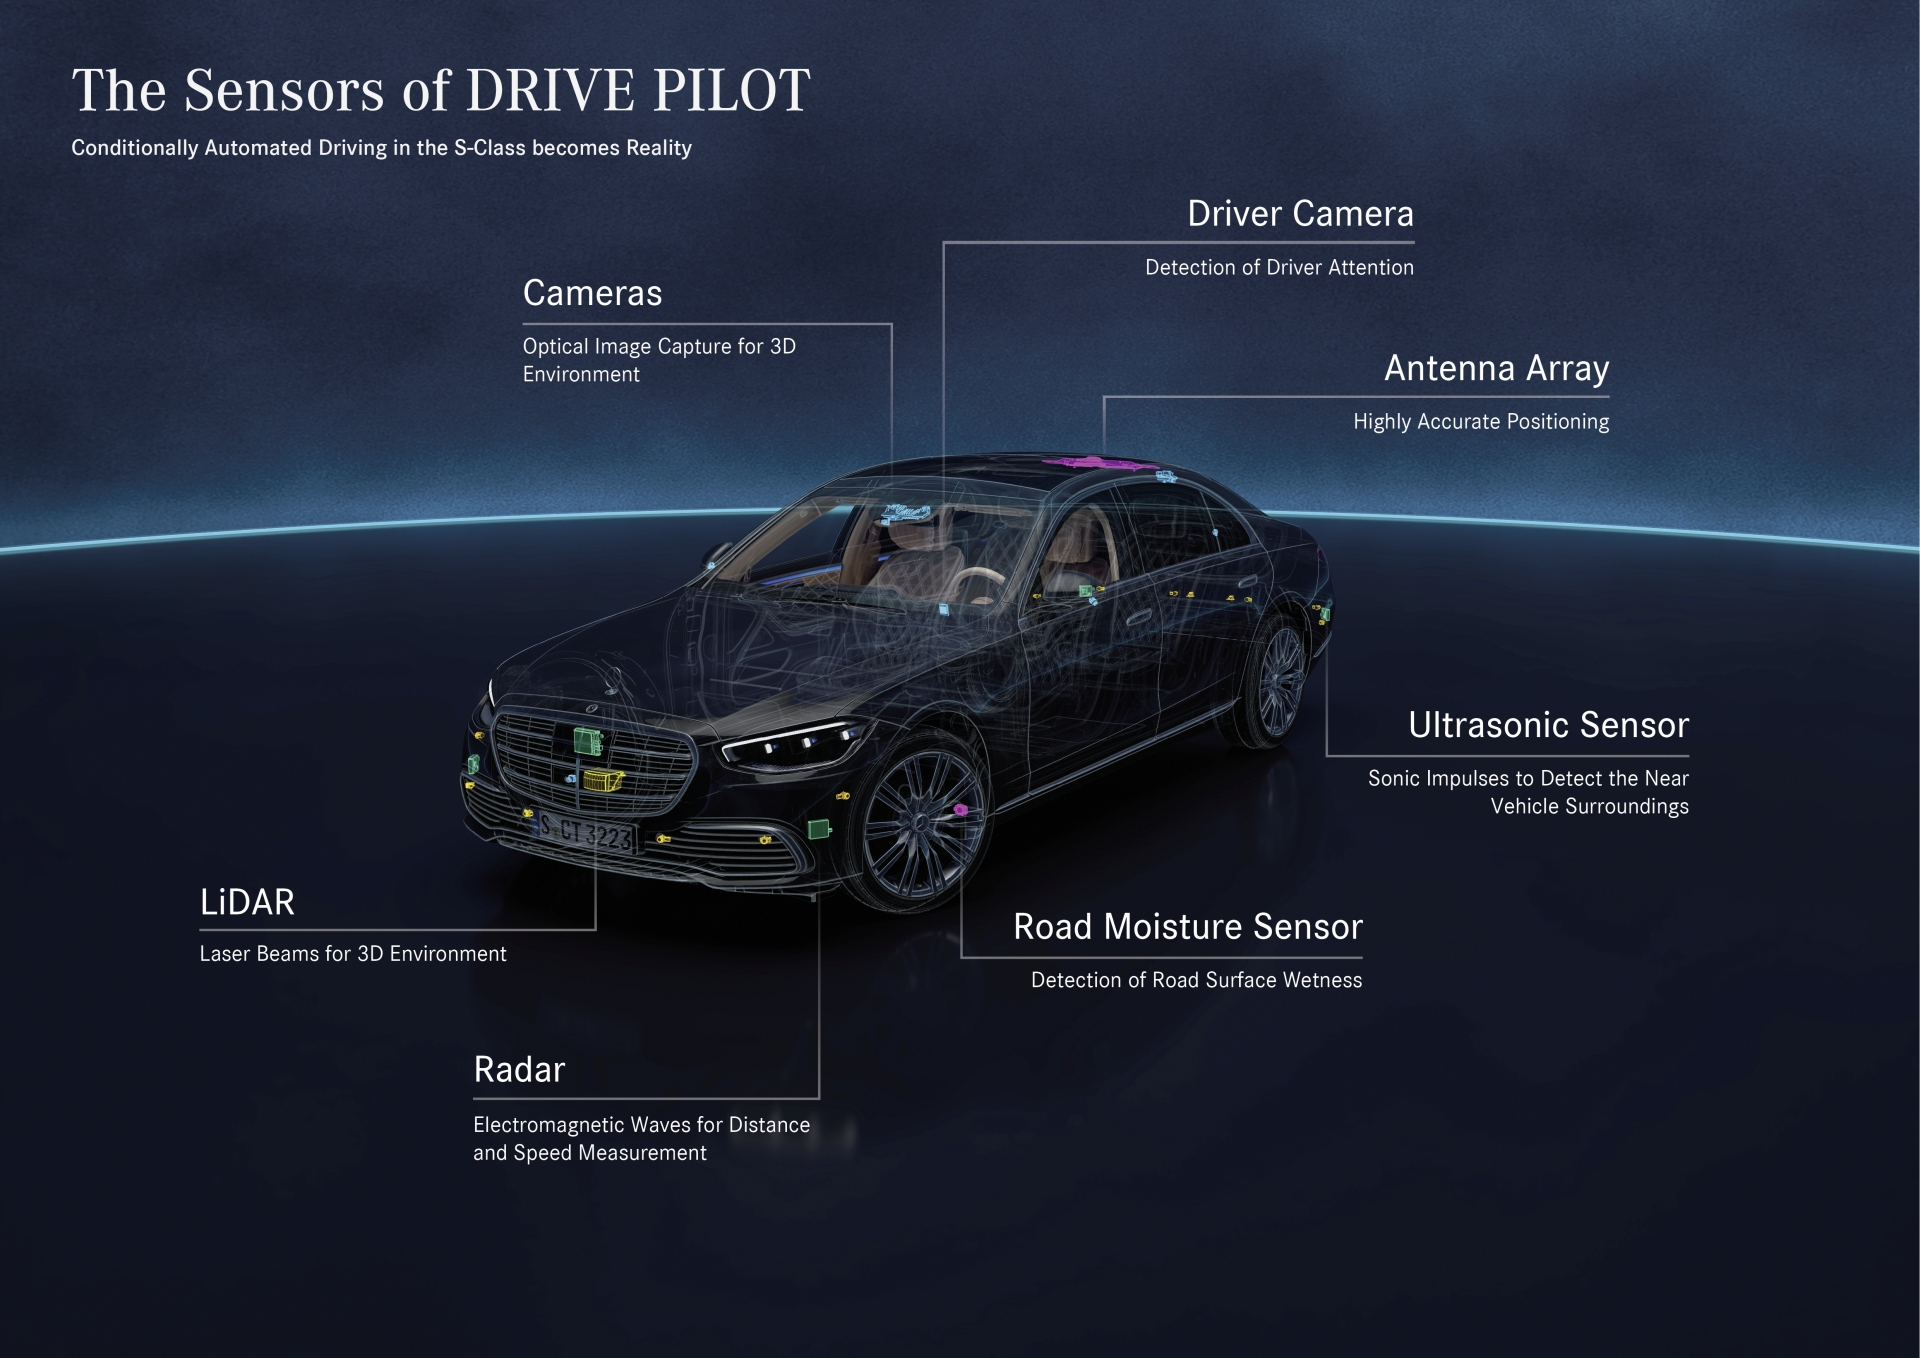 DRIVE PILOT baut auf der Umfeldsensorik des Fahrassistenz-Pakets auf und umfasst zusätzliche Sensoren, die Mercedes-Benz für ein sicheres, hochautomatisiertes Fahren für unverzichtbar hält. Dazu gehören LiDAR, eine Kamera in der Heckscheibe und Mikrofone, insbesondere zum Erkennen von Blaulicht und anderen Sondersignalen von Einsatzfahrzeugen. Außerdem ist ein Nässesensor im Radkasten. Die S-Klasse mit optionalem DRIVE PILOT verfügt zudem über redundante Lenk- und Bremssysteme sowie ein redundantes Bordnetz, um auch beim Ausfall eines dieser Systeme manövrierfähig zu bleiben und eine sichere Übergabe an den Fahrer zu gewährleisten. DRIVE PILOT builds on the surround sensors of the Driving Assistance Package and comprises additional sensors that Mercedes-Benz considers indispensable for safe conditionally automated driving. These include LiDAR, as well as a camera in the rear window and microphones, especially for detecting blue lights and other signals from emergency vehicles. There is also a wetness sensor in the wheel well. The S-Class with optional DRIVE PILOT also has redundant steering and braking systems and a redundant on-board electrical system. This ensures that it remains manoeuvrable even if one of these systems fails and enables safe handover to the driver. 